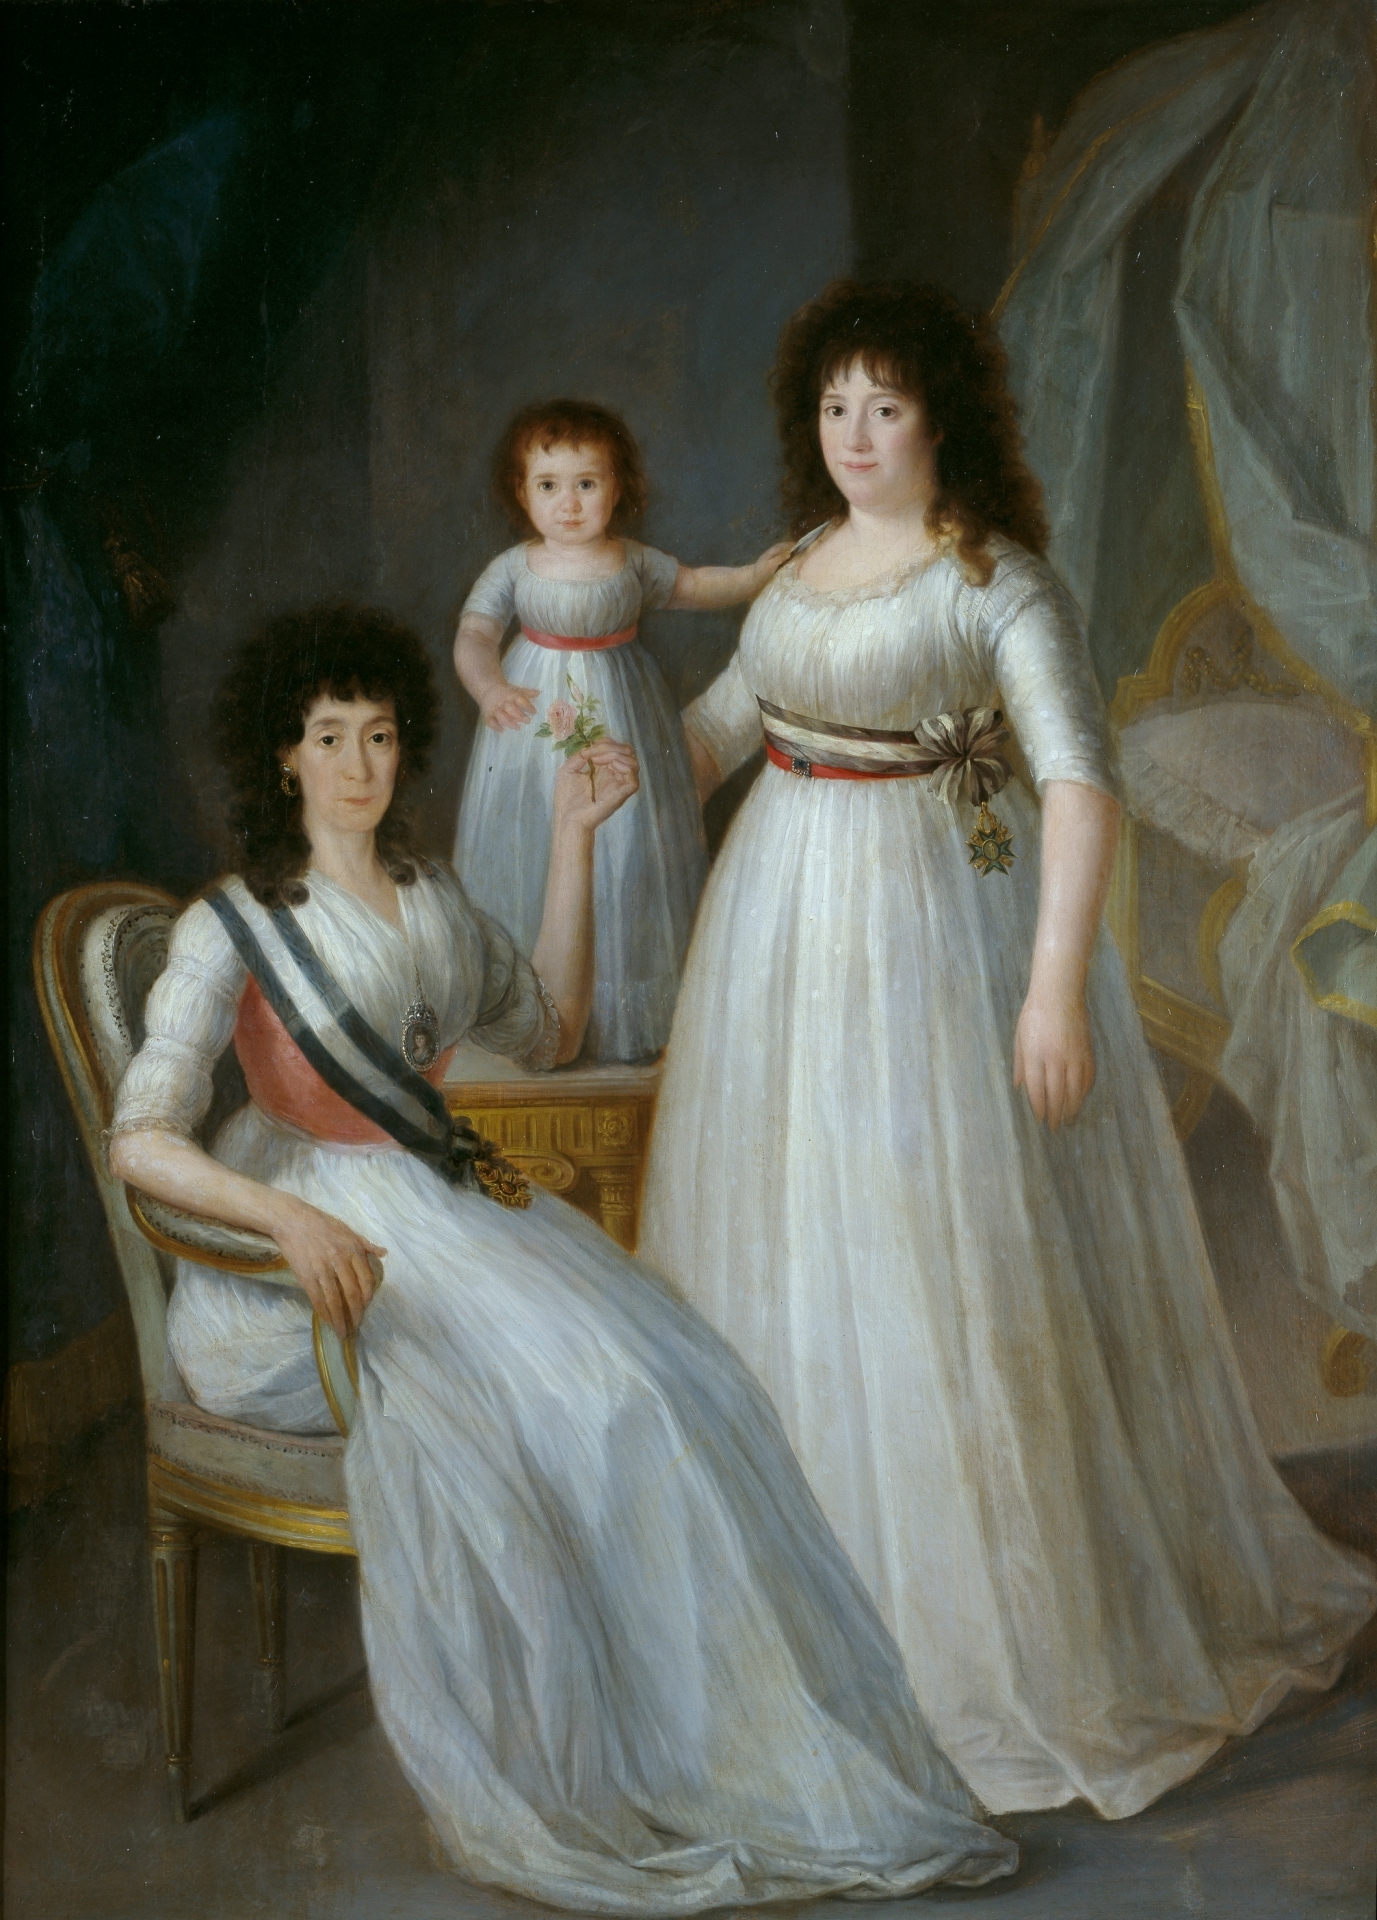 La condesa-duquesa de Benavente (?), acompañada de Mercedes de Rojas y Tello, futura marquesa de Villanueva de Duero, y su hija María Asunción